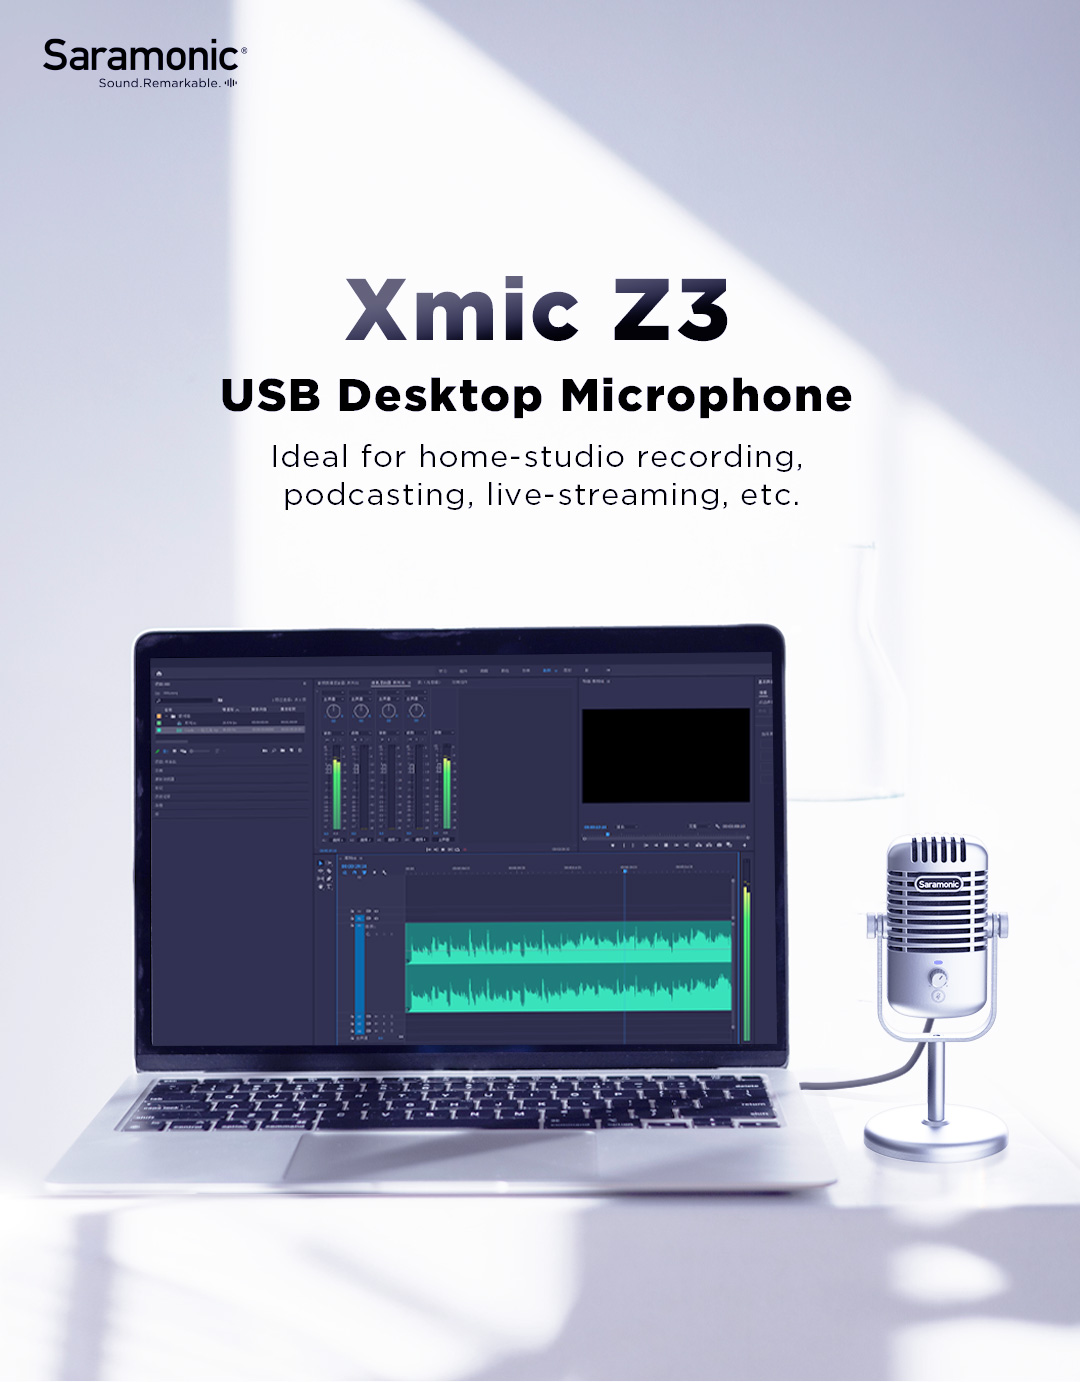 Saramonic Xmic Z3 USB microphone